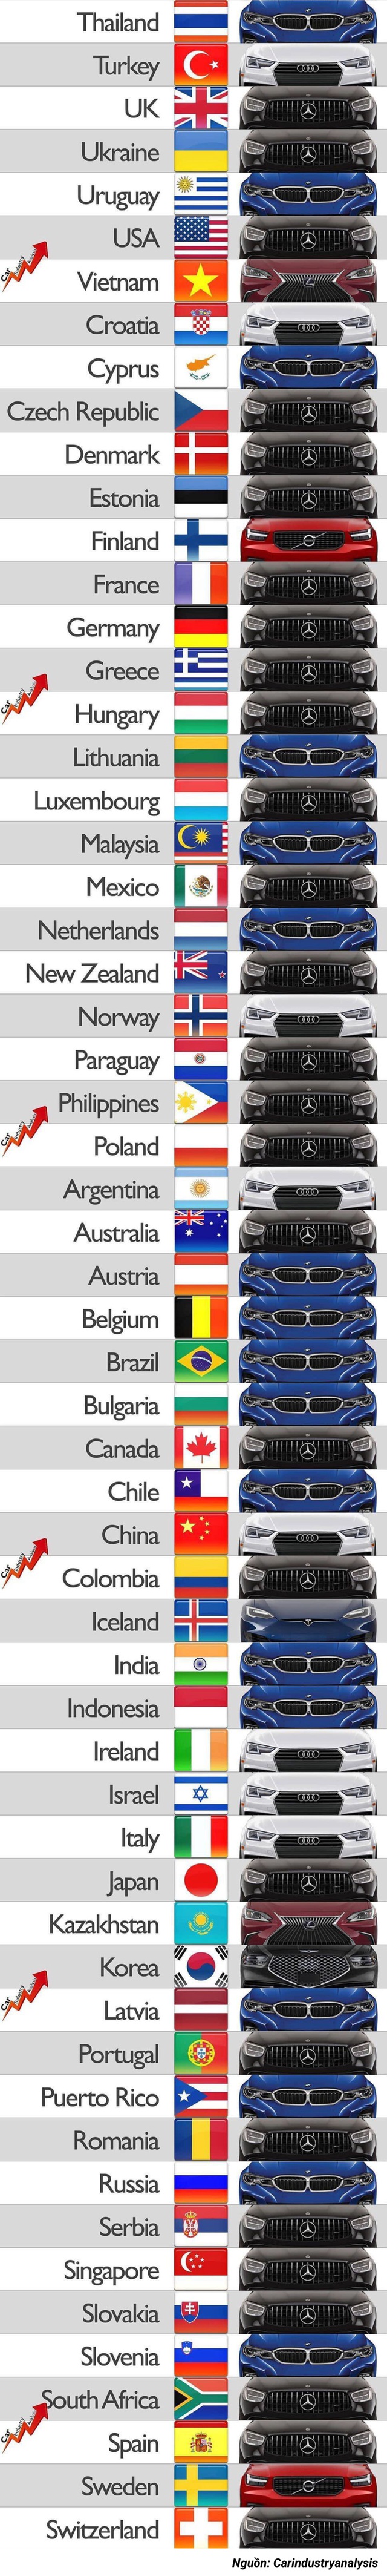 Các quốc gia trên thế giới thích sử dụng thương hiệu xe hạng sang nào nhất? - Ảnh 1.